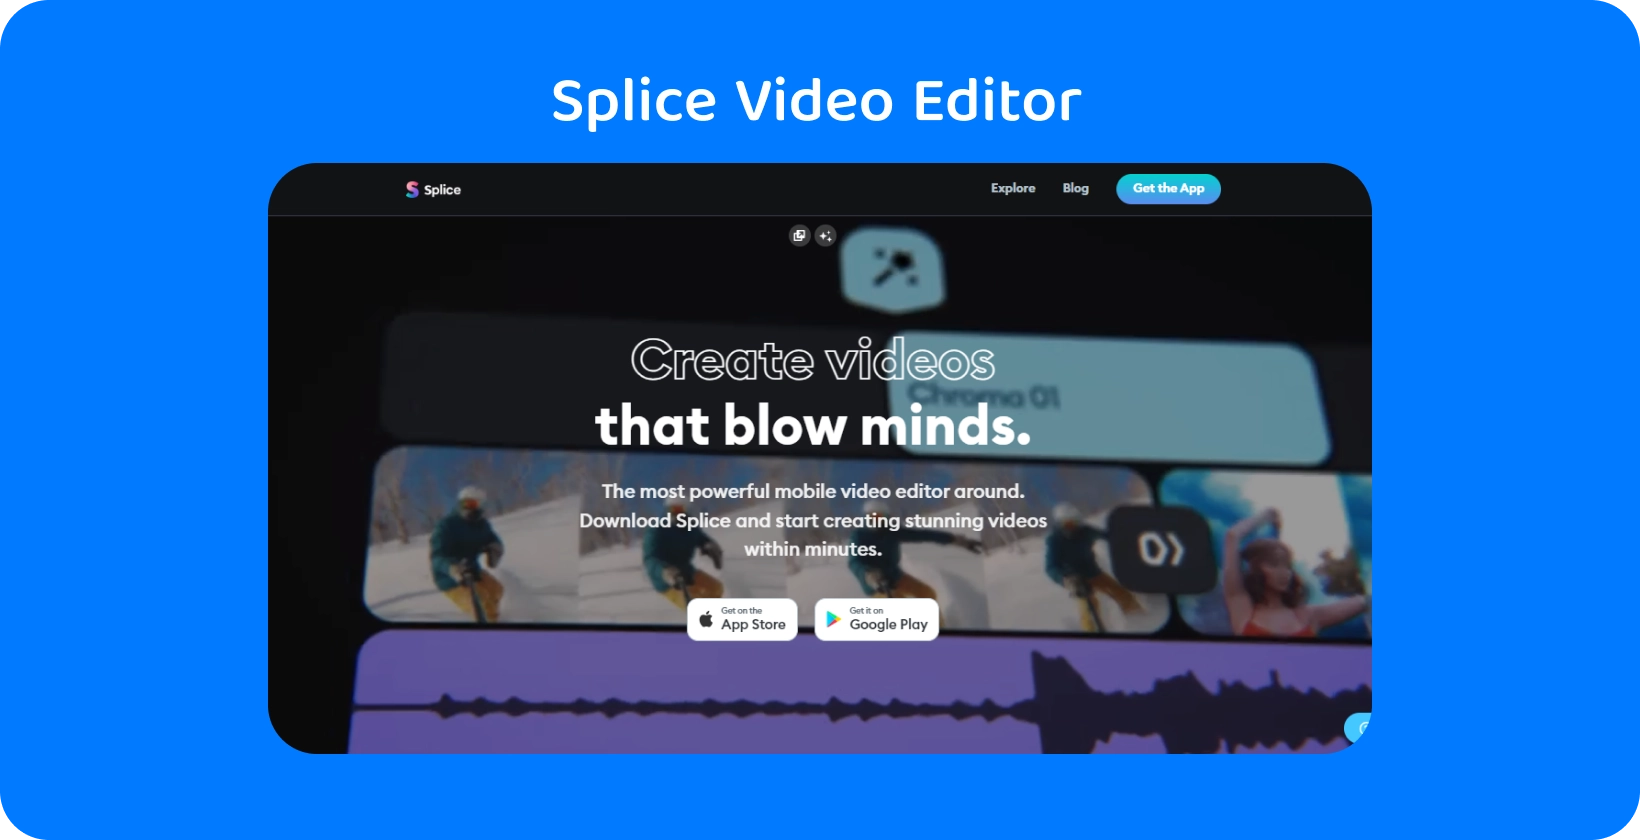 Promozione dell'app Splice su uno smartphone, pubblicizzandola come il più potente editor video mobile per la creazione di video straordinari.